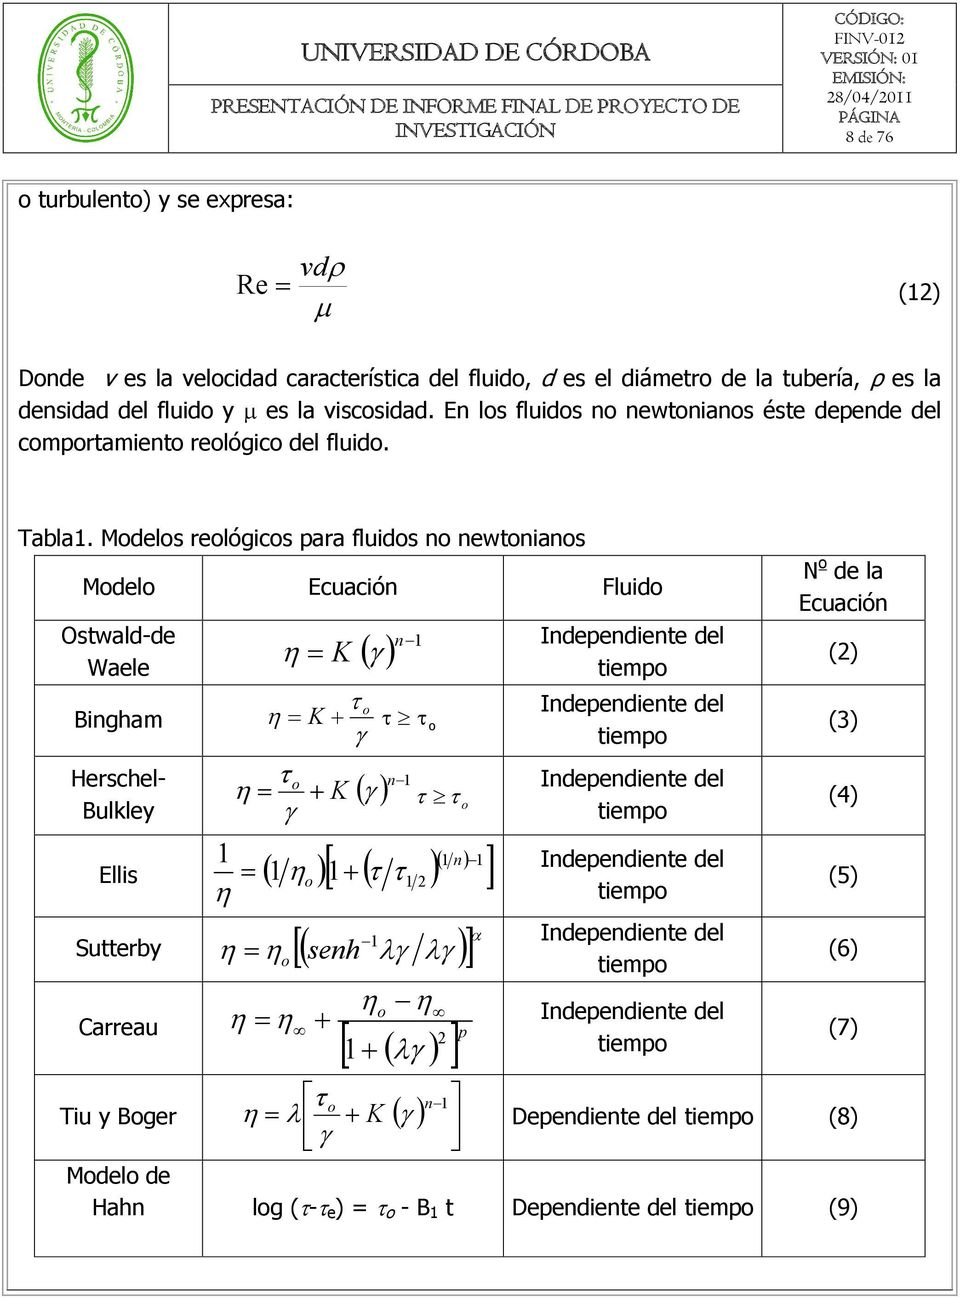 Modelos reológicos para fluidos no newtonianos Modelo Ecuación Fluido Ostwald-de n K 1 Waele Bingham Herschel- Bulkley o K o K o n 1 o Ellis 1 n 1 1 1 1 o 1 2 1 Sutterby senh Carreau o o 1 2